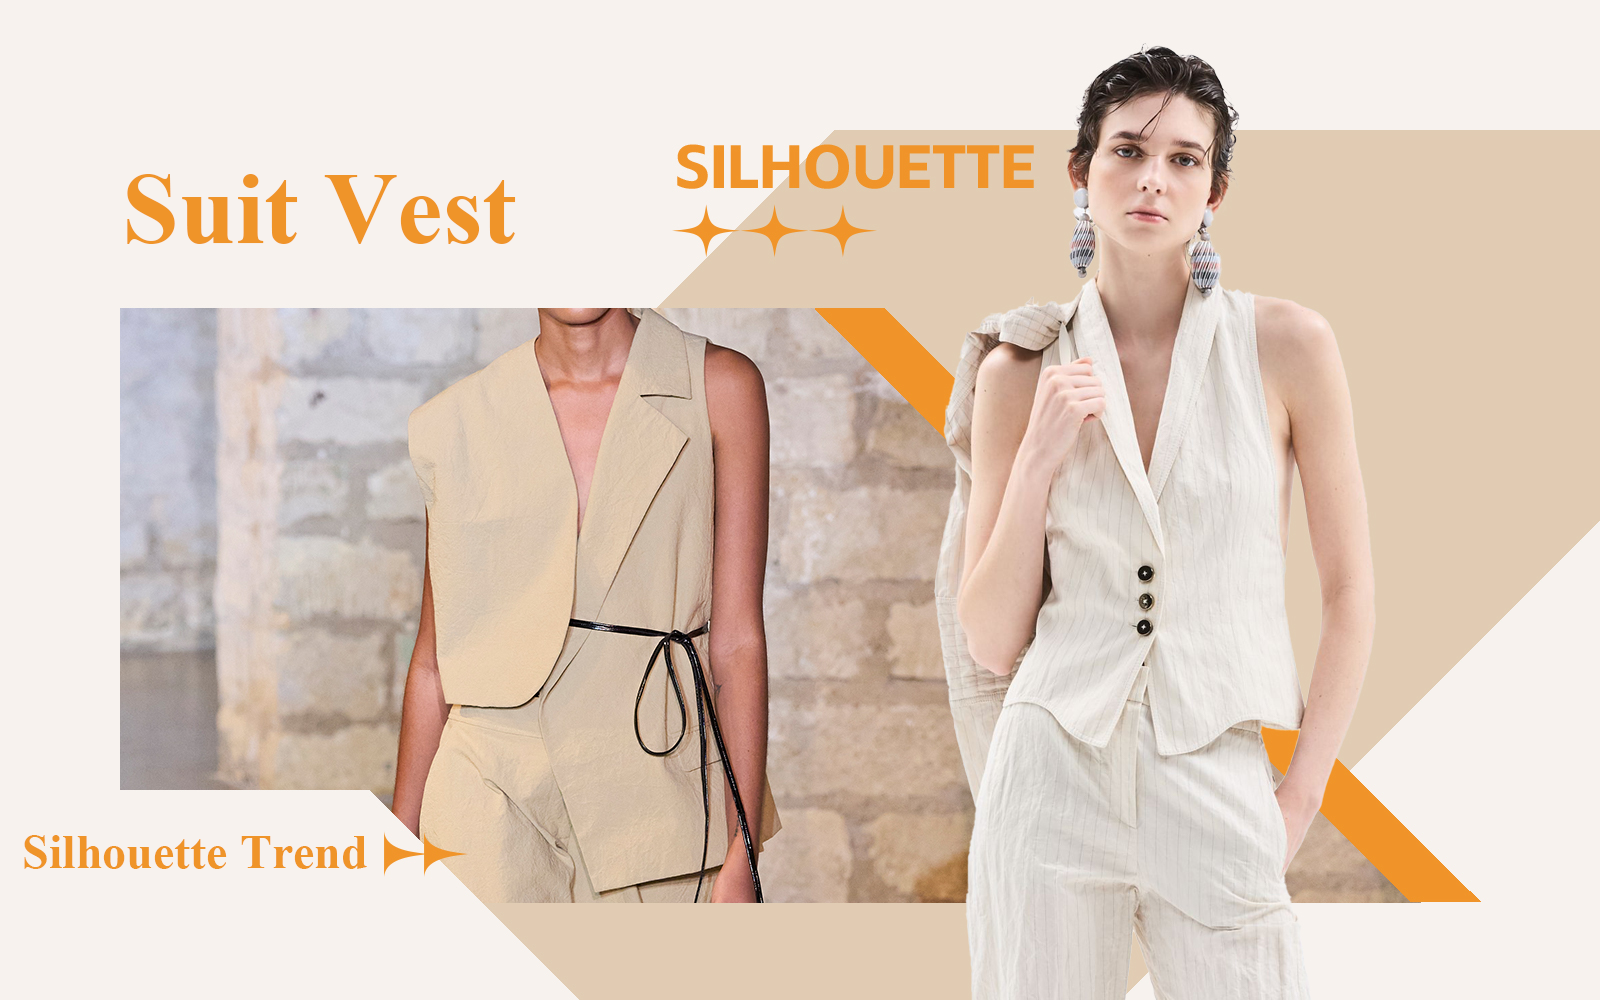 Suit Vest -- The Silhouette Trend for Women's Vest